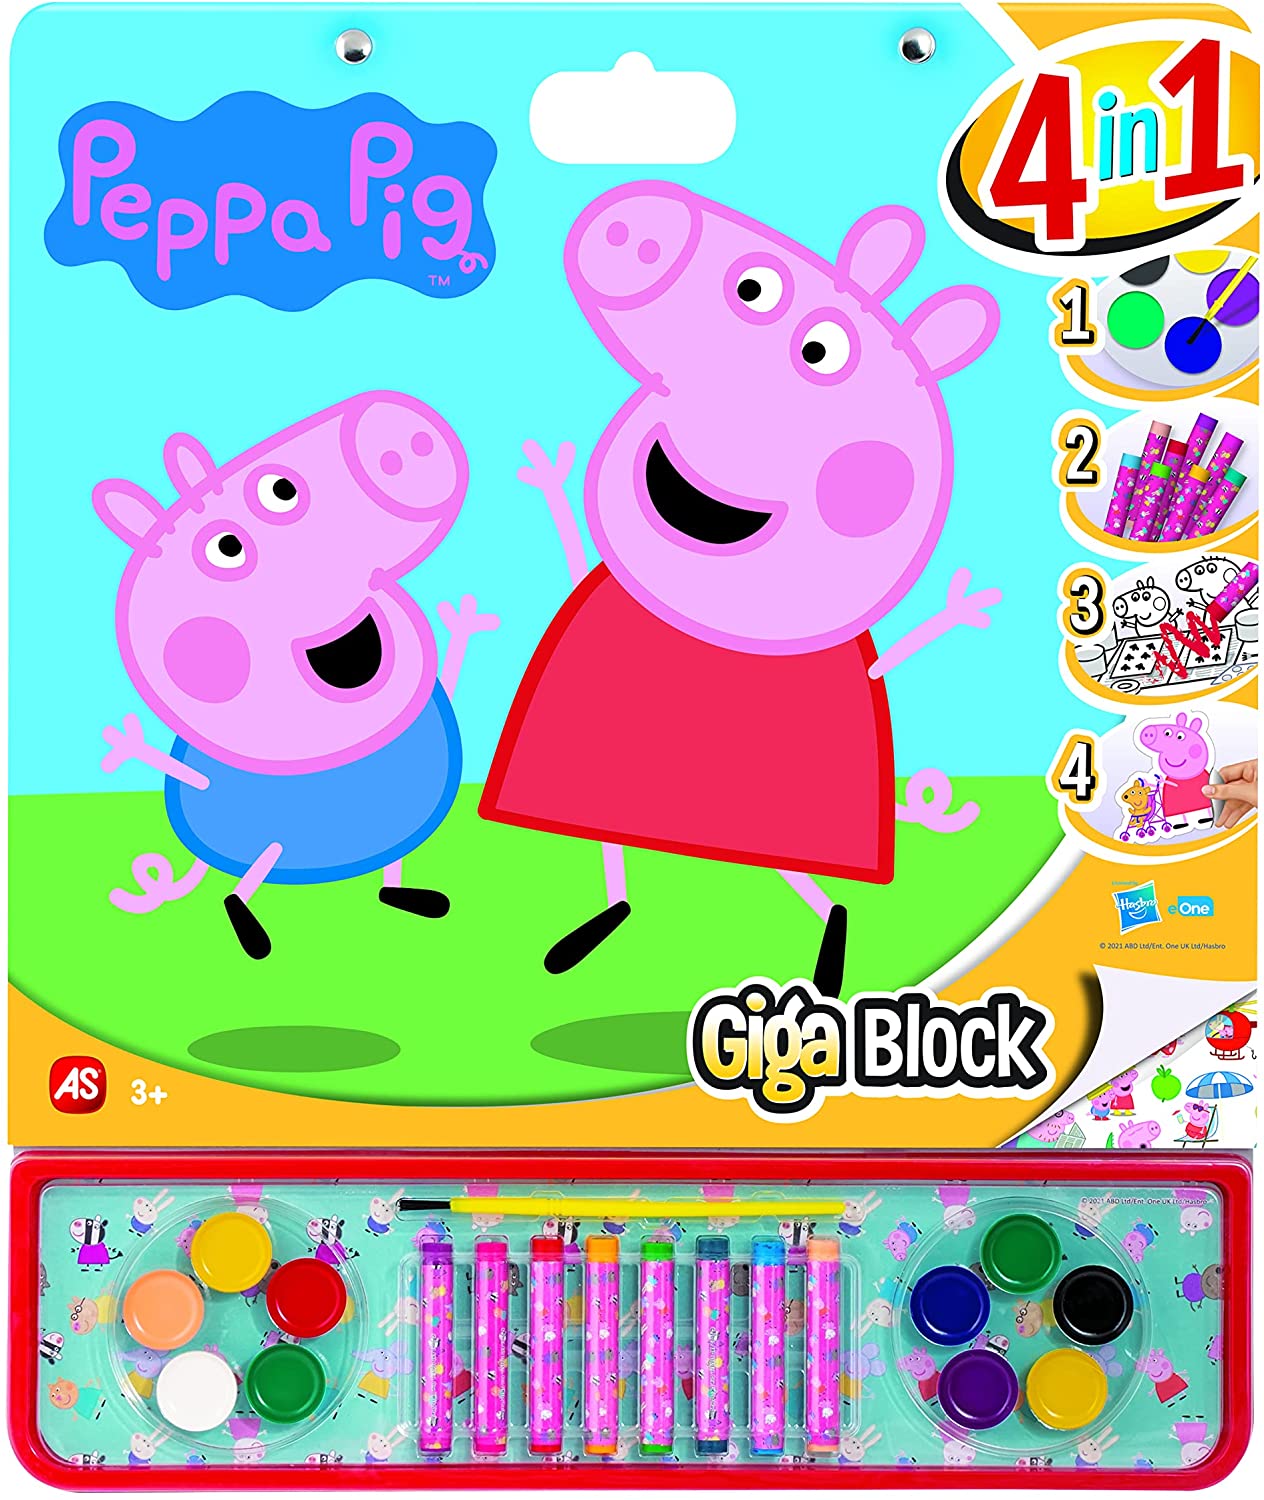 GIGA BLOCK PEPPA PIG 4 EN 1 21867 - N69522